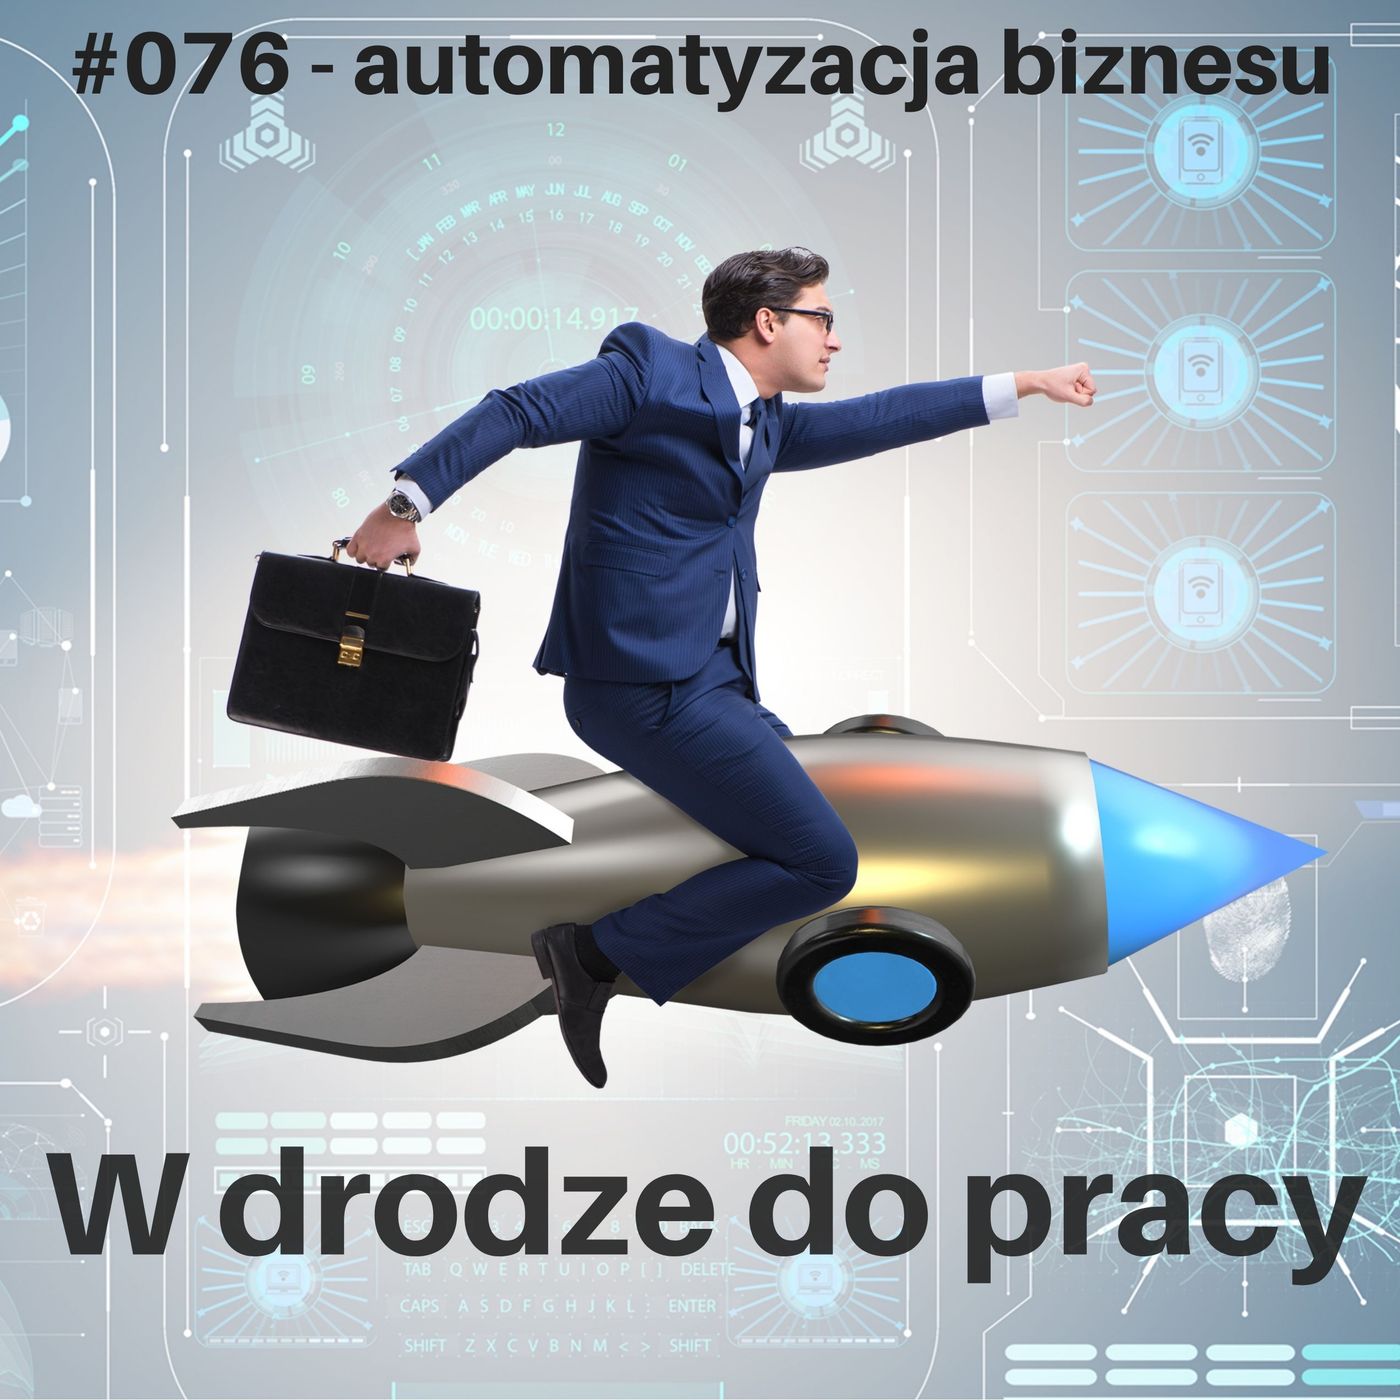 #076 - Automatyzacja biznesu w praktyce